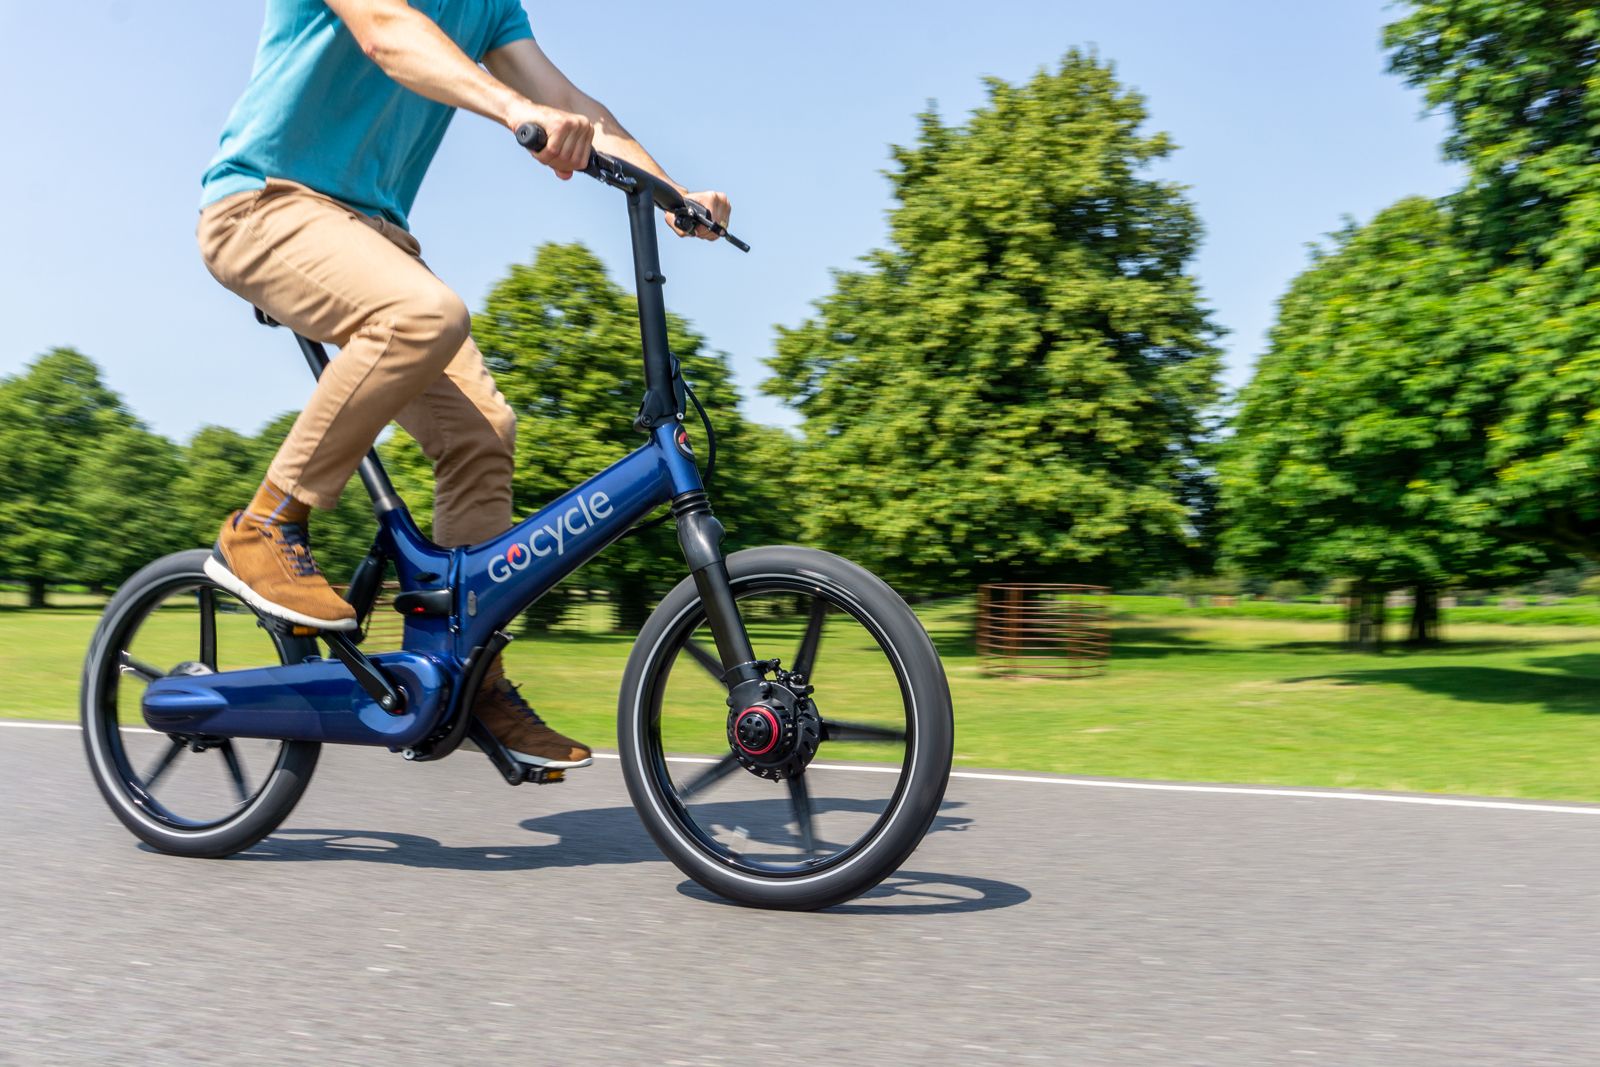 Gocycle GX 2020 photo 1